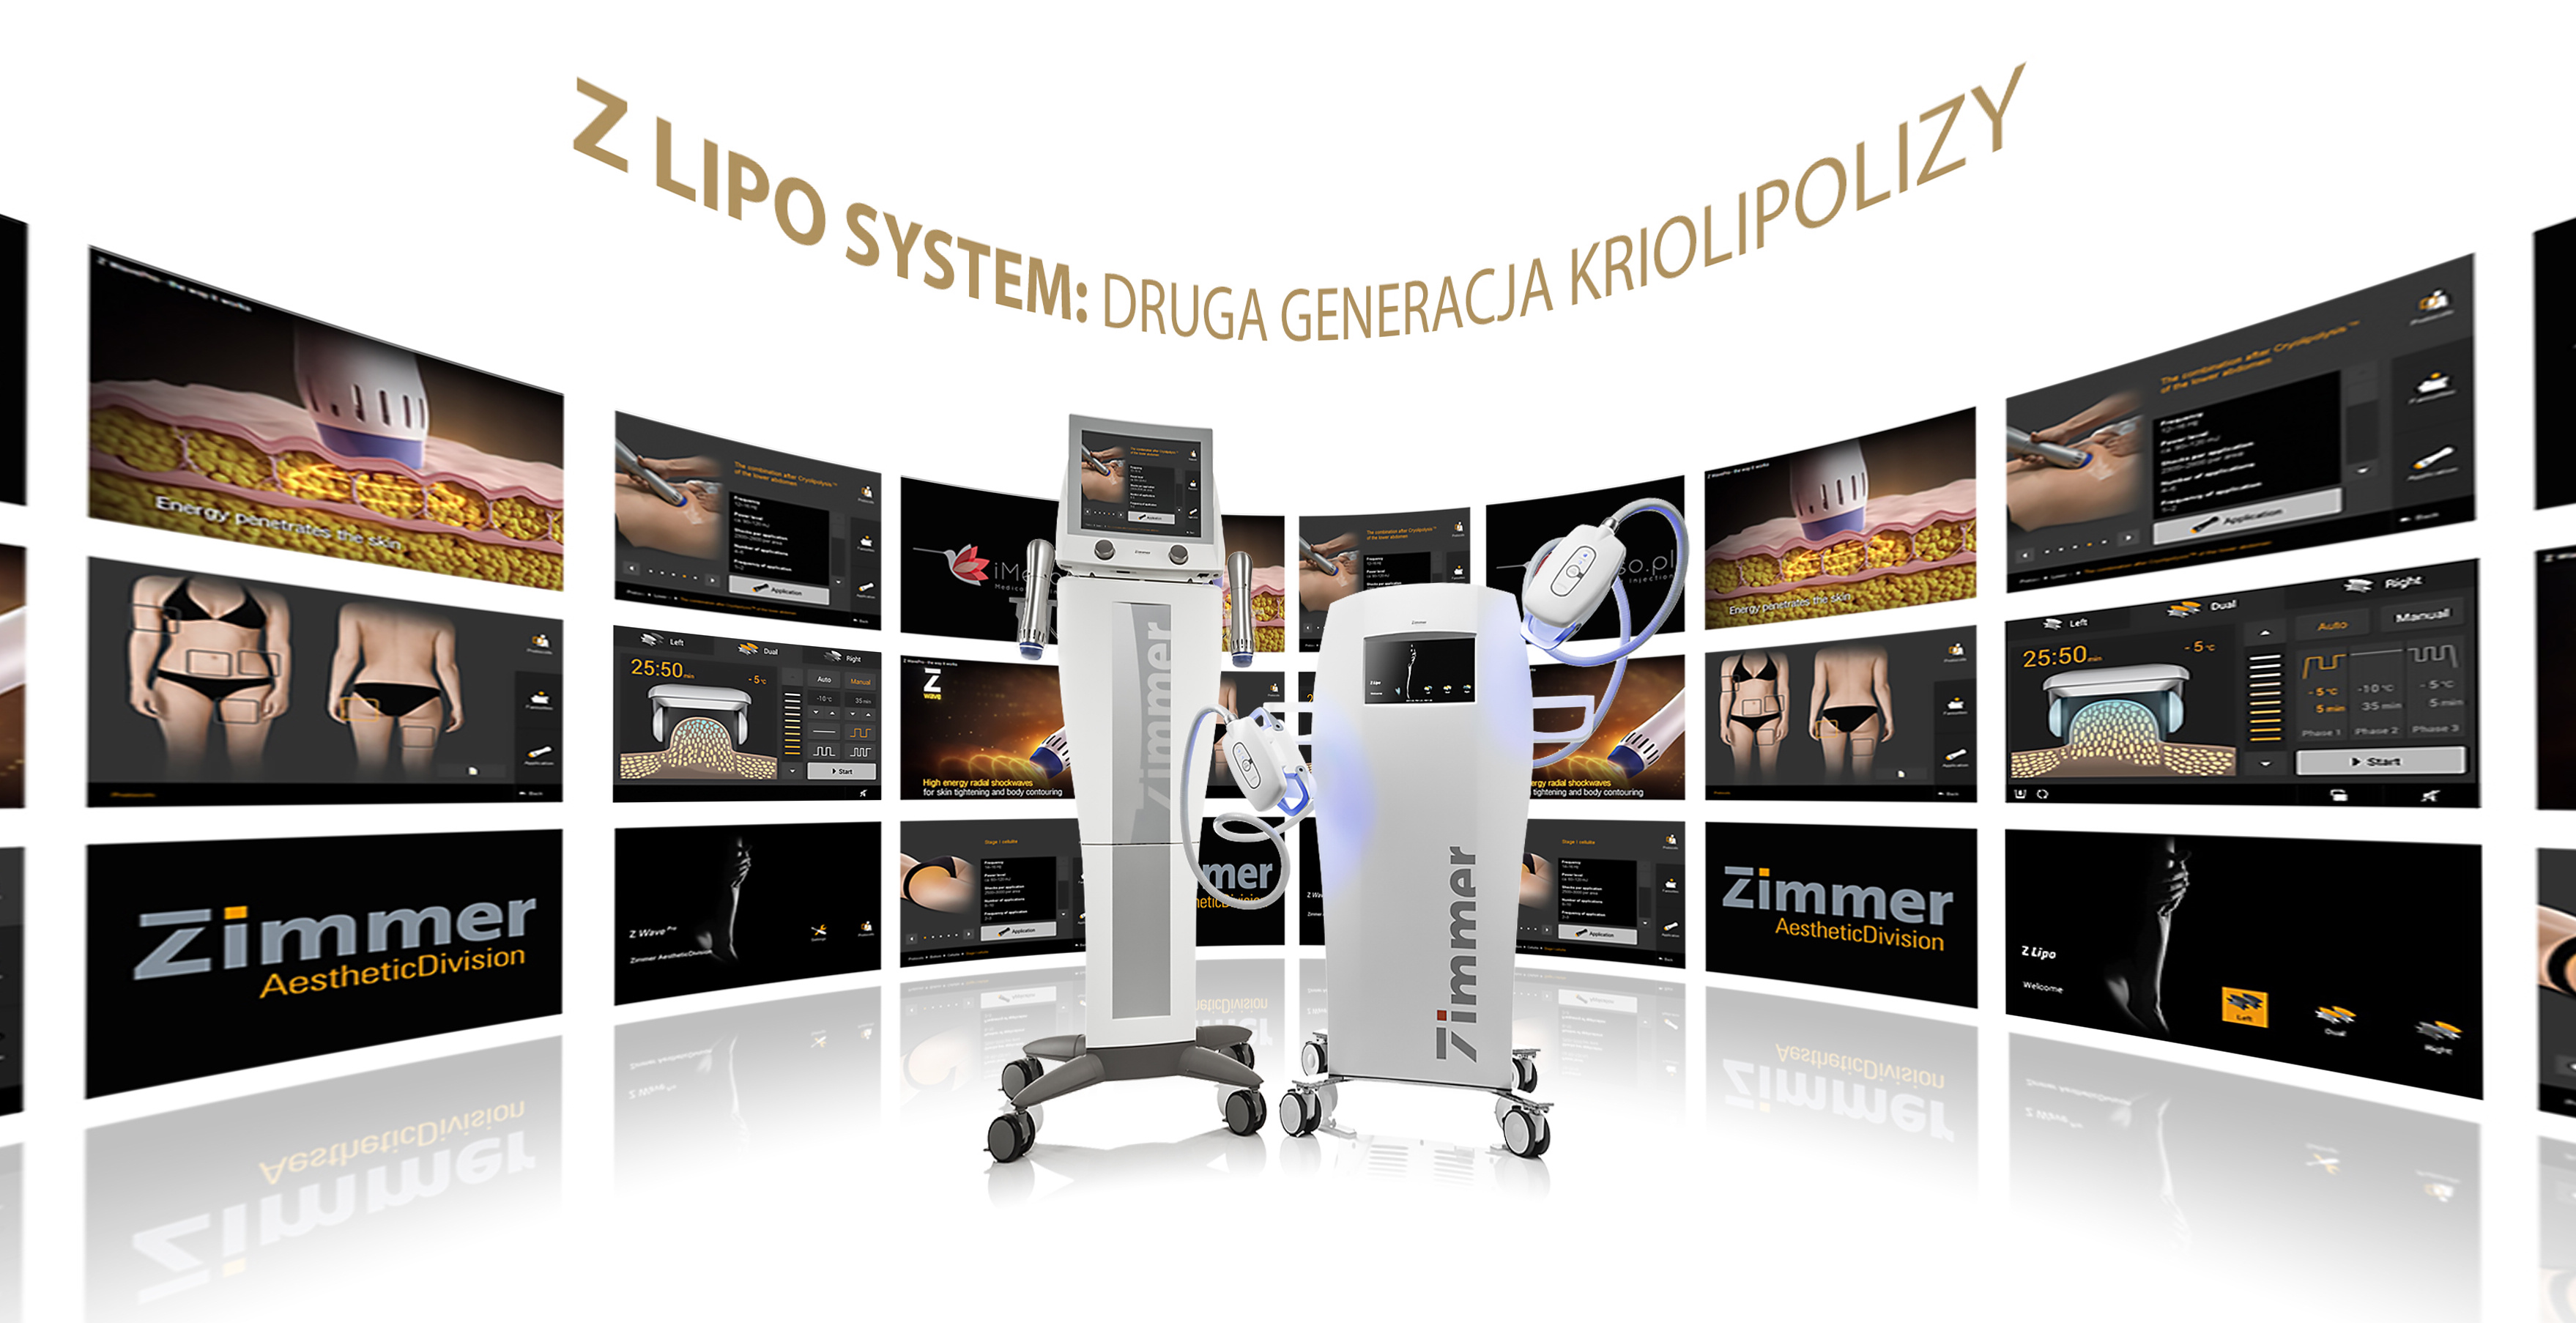 Zimmer ZLipo System urządzenie do kriolipolizy - IMESO AESTHETIC